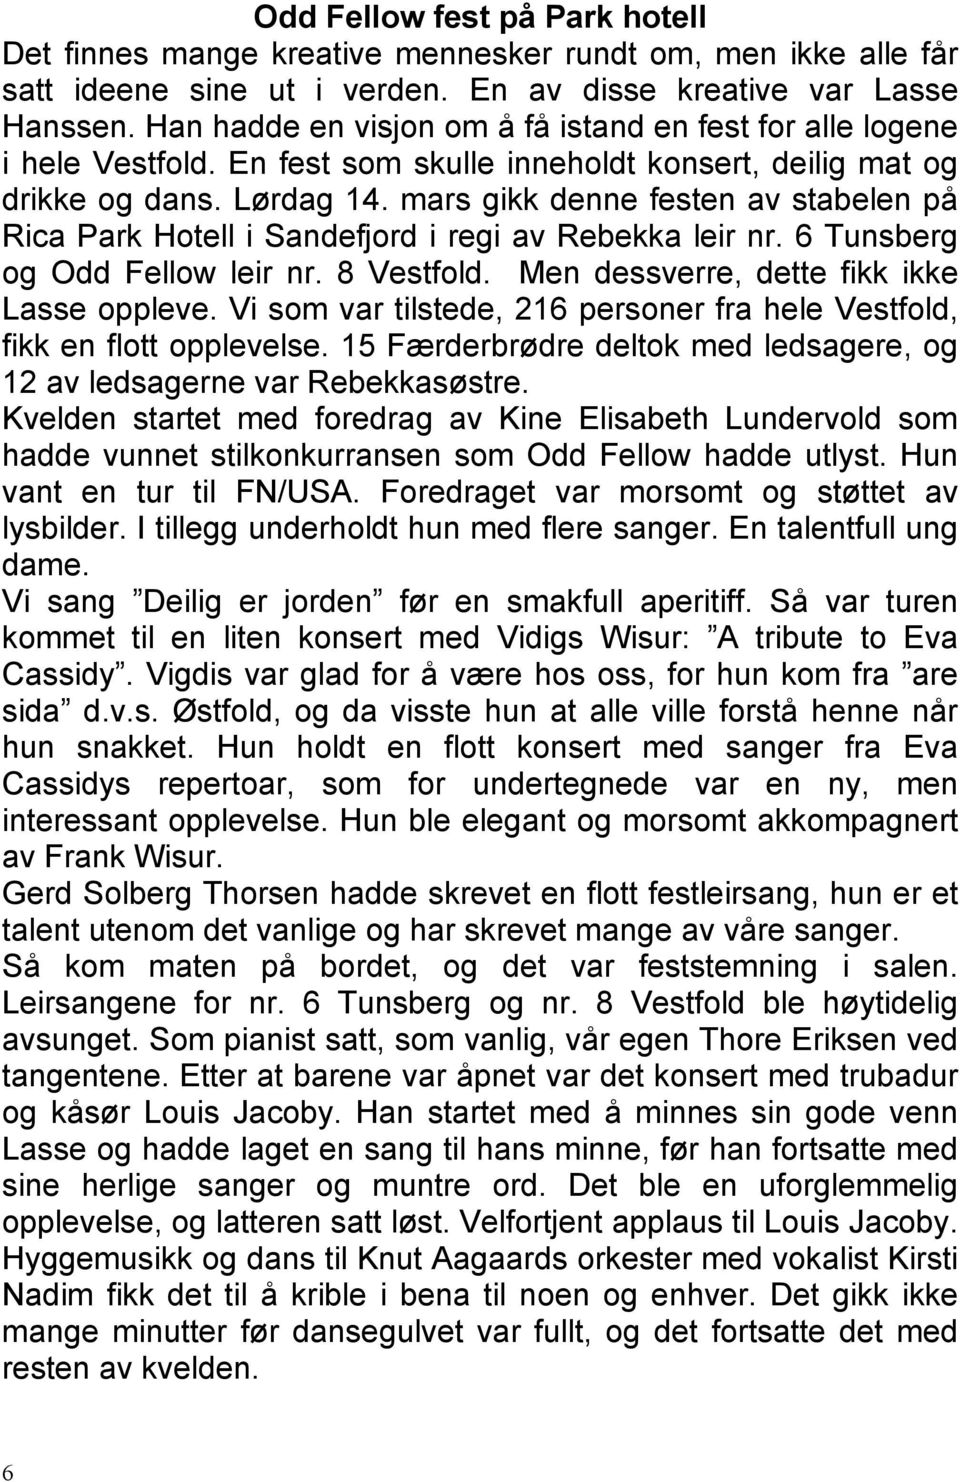 mars gikk denne festen av stabelen på Rica Park Hotell i Sandefjord i regi av Rebekka leir nr. 6 Tunsberg og Odd Fellow leir nr. 8 Vestfold. Men dessverre, dette fikk ikke Lasse oppleve.